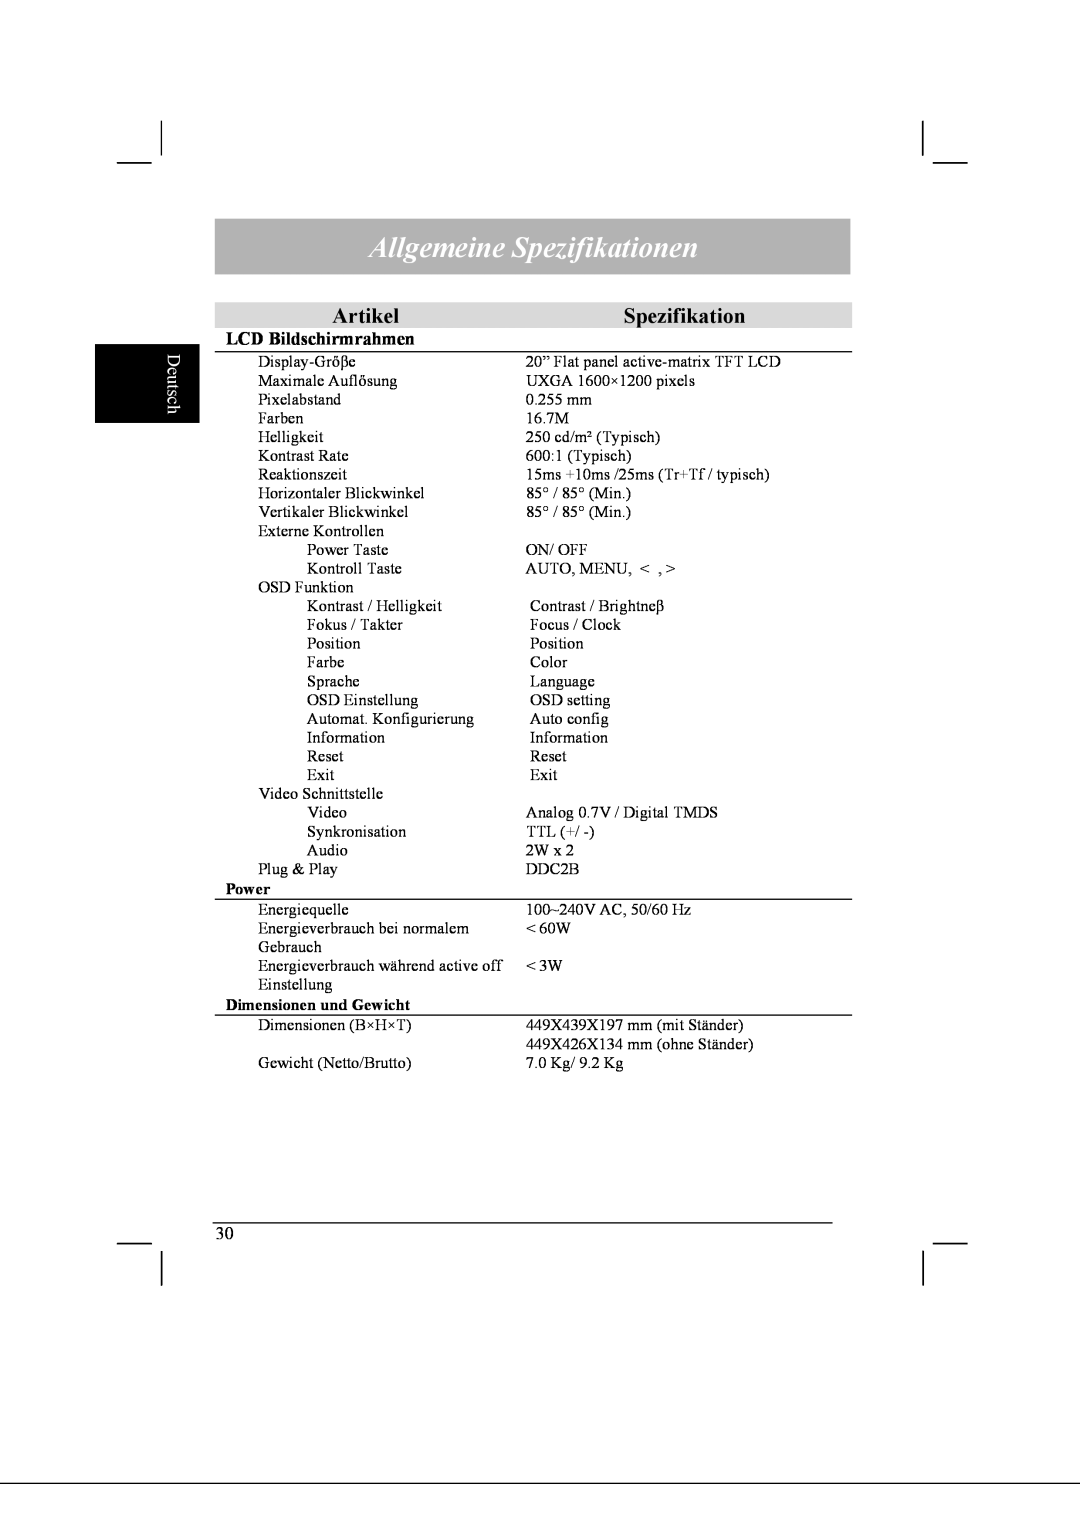 Acer AL2021 manual Allgemeine Spezifikationen, Artikel, Deutsch, Power, Dimensionen und Gewicht 